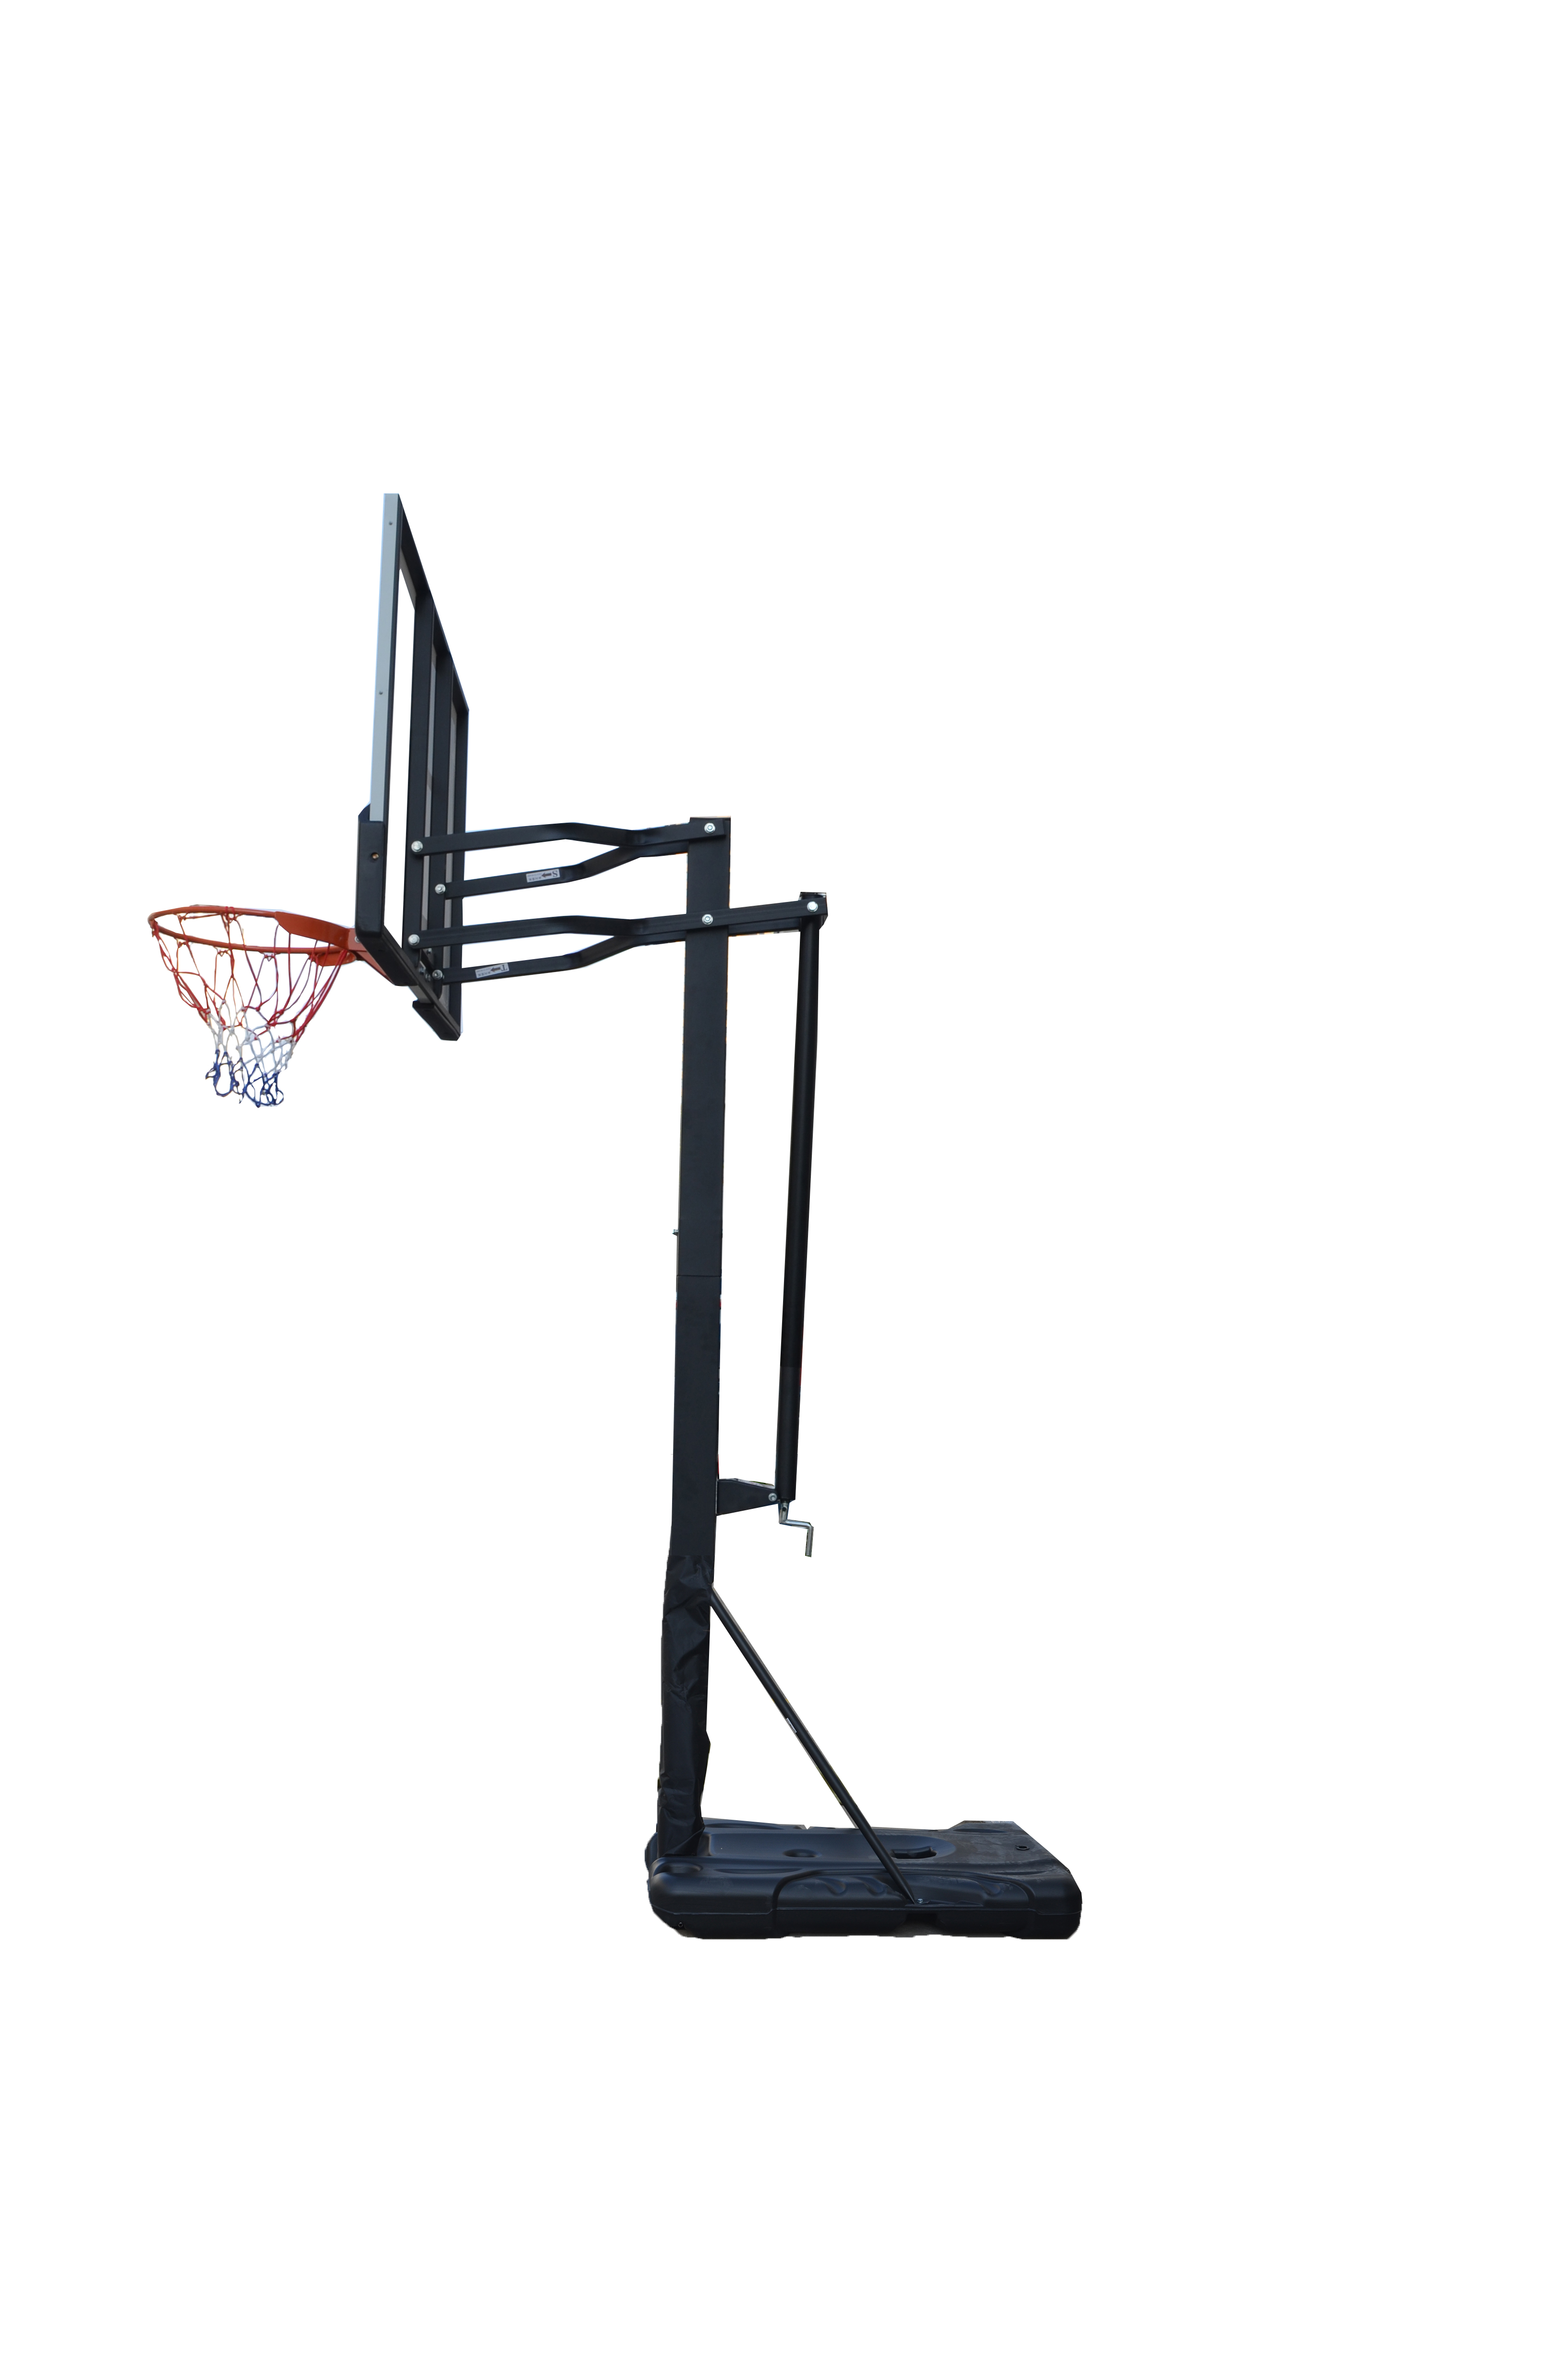 Мобильная баскетбольная стойка Proxima 60", поликарбонат. Фото N2